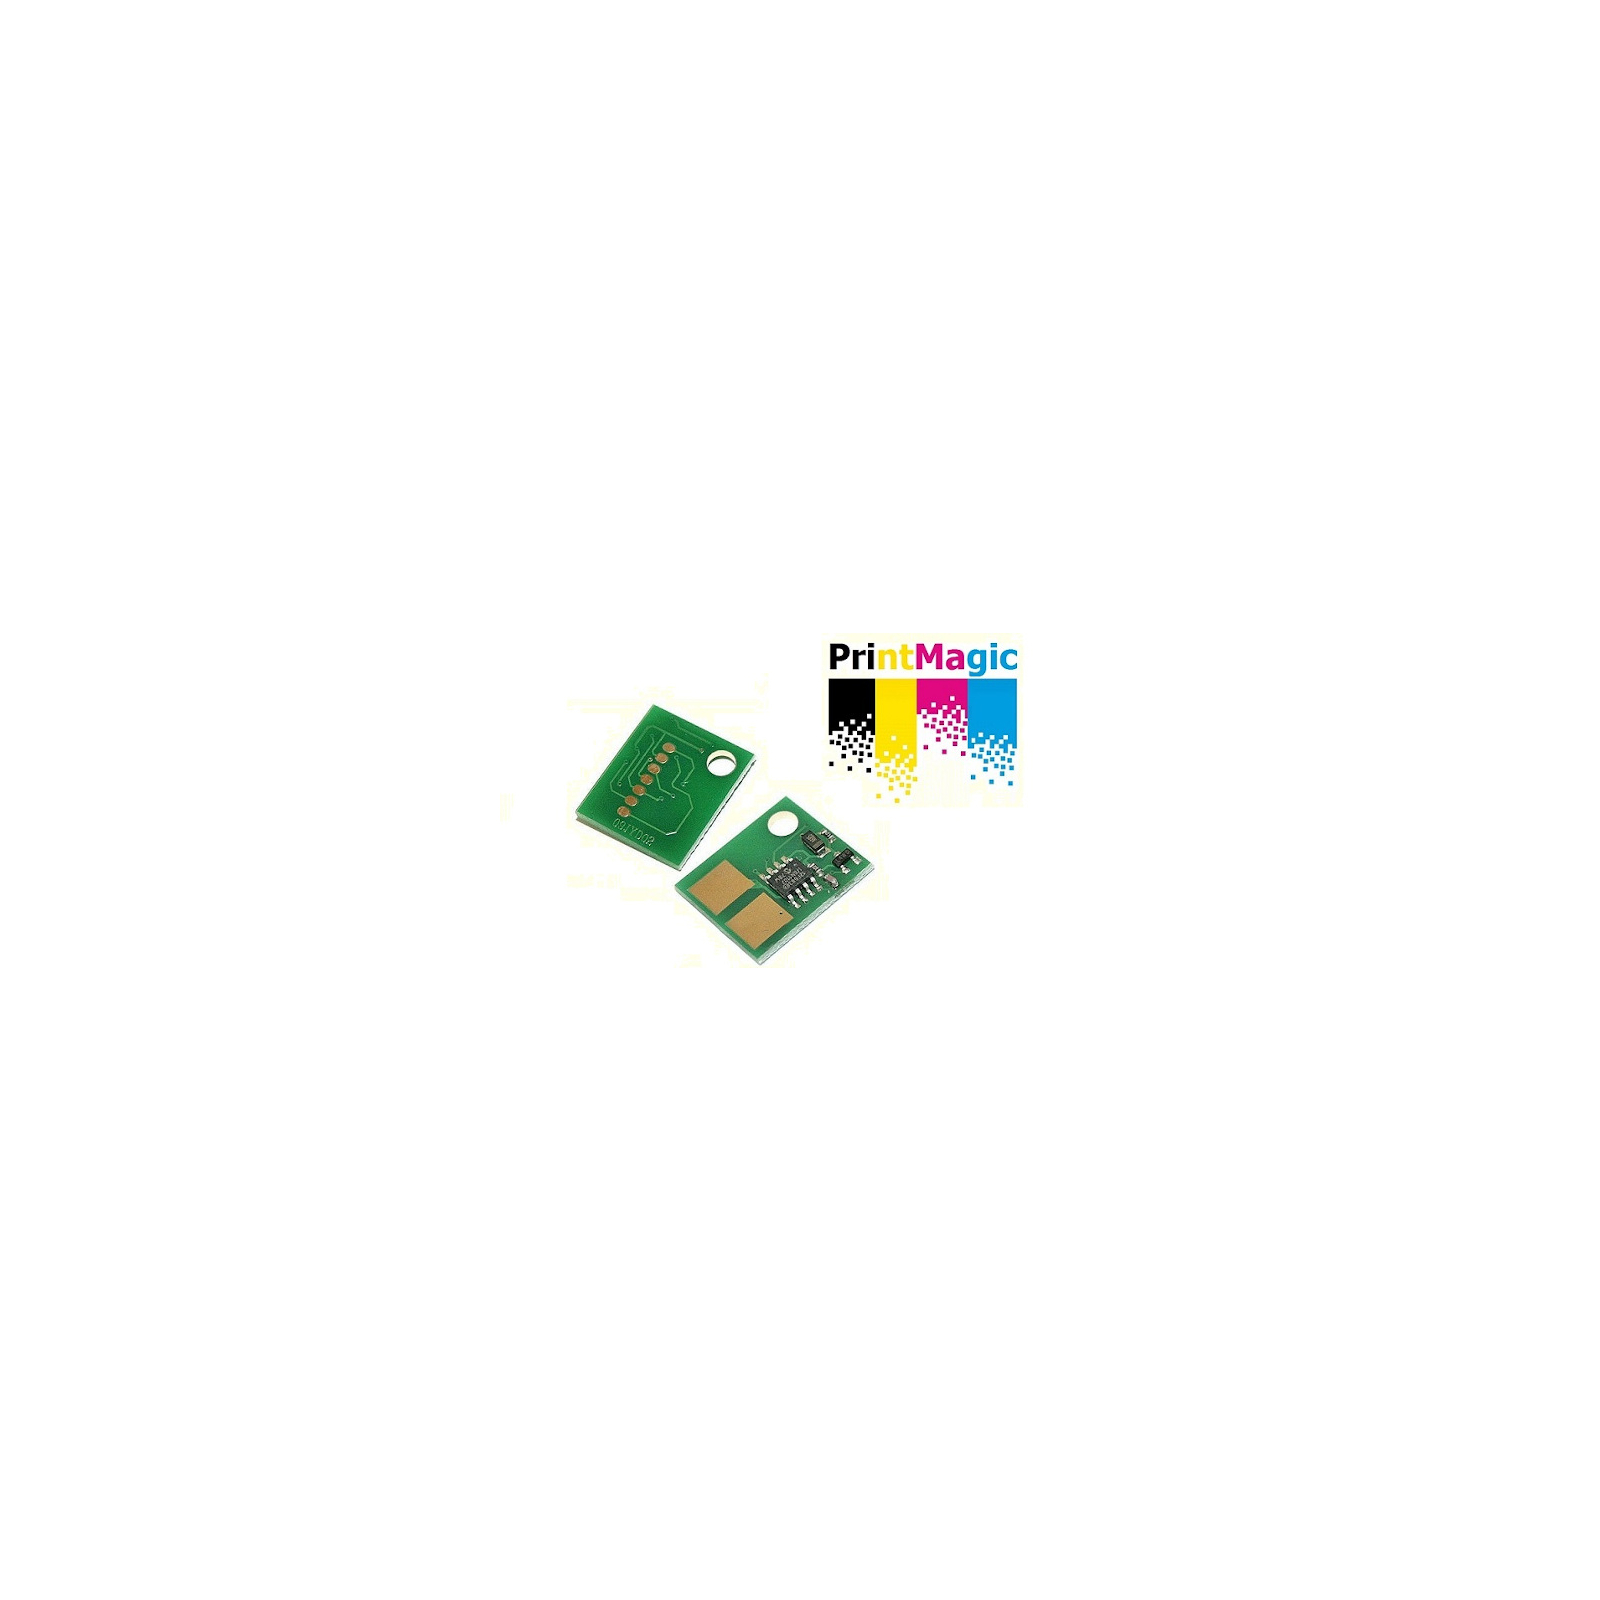 Чип для картриджа Samsung SCX-4650/4652/4655 [2.5K] D117S PrintMagic (CPM-SD117S)